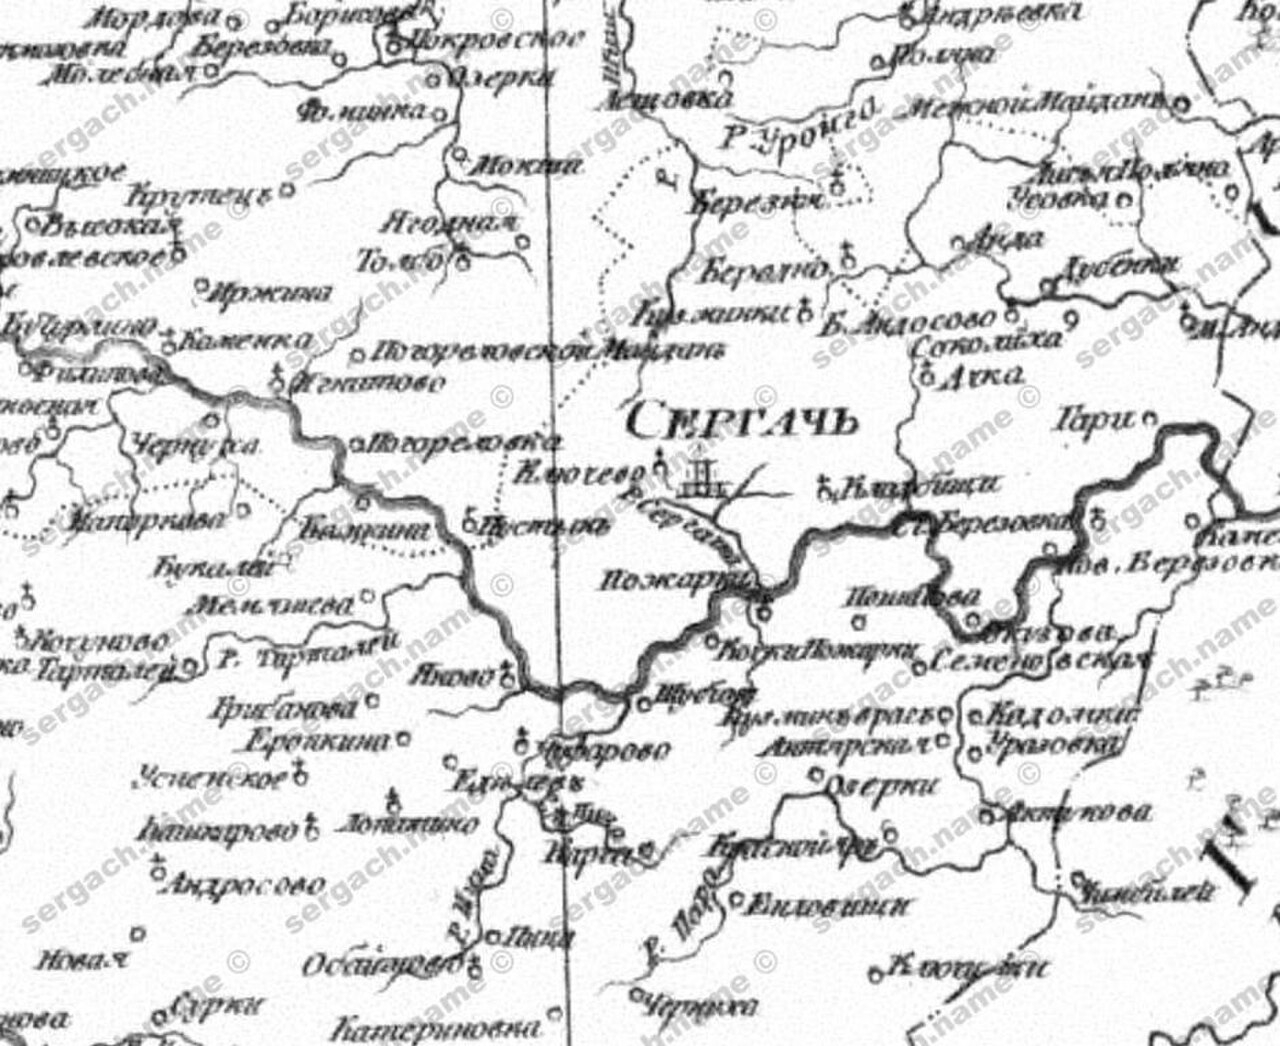 река пьяна на карте нижегородской области